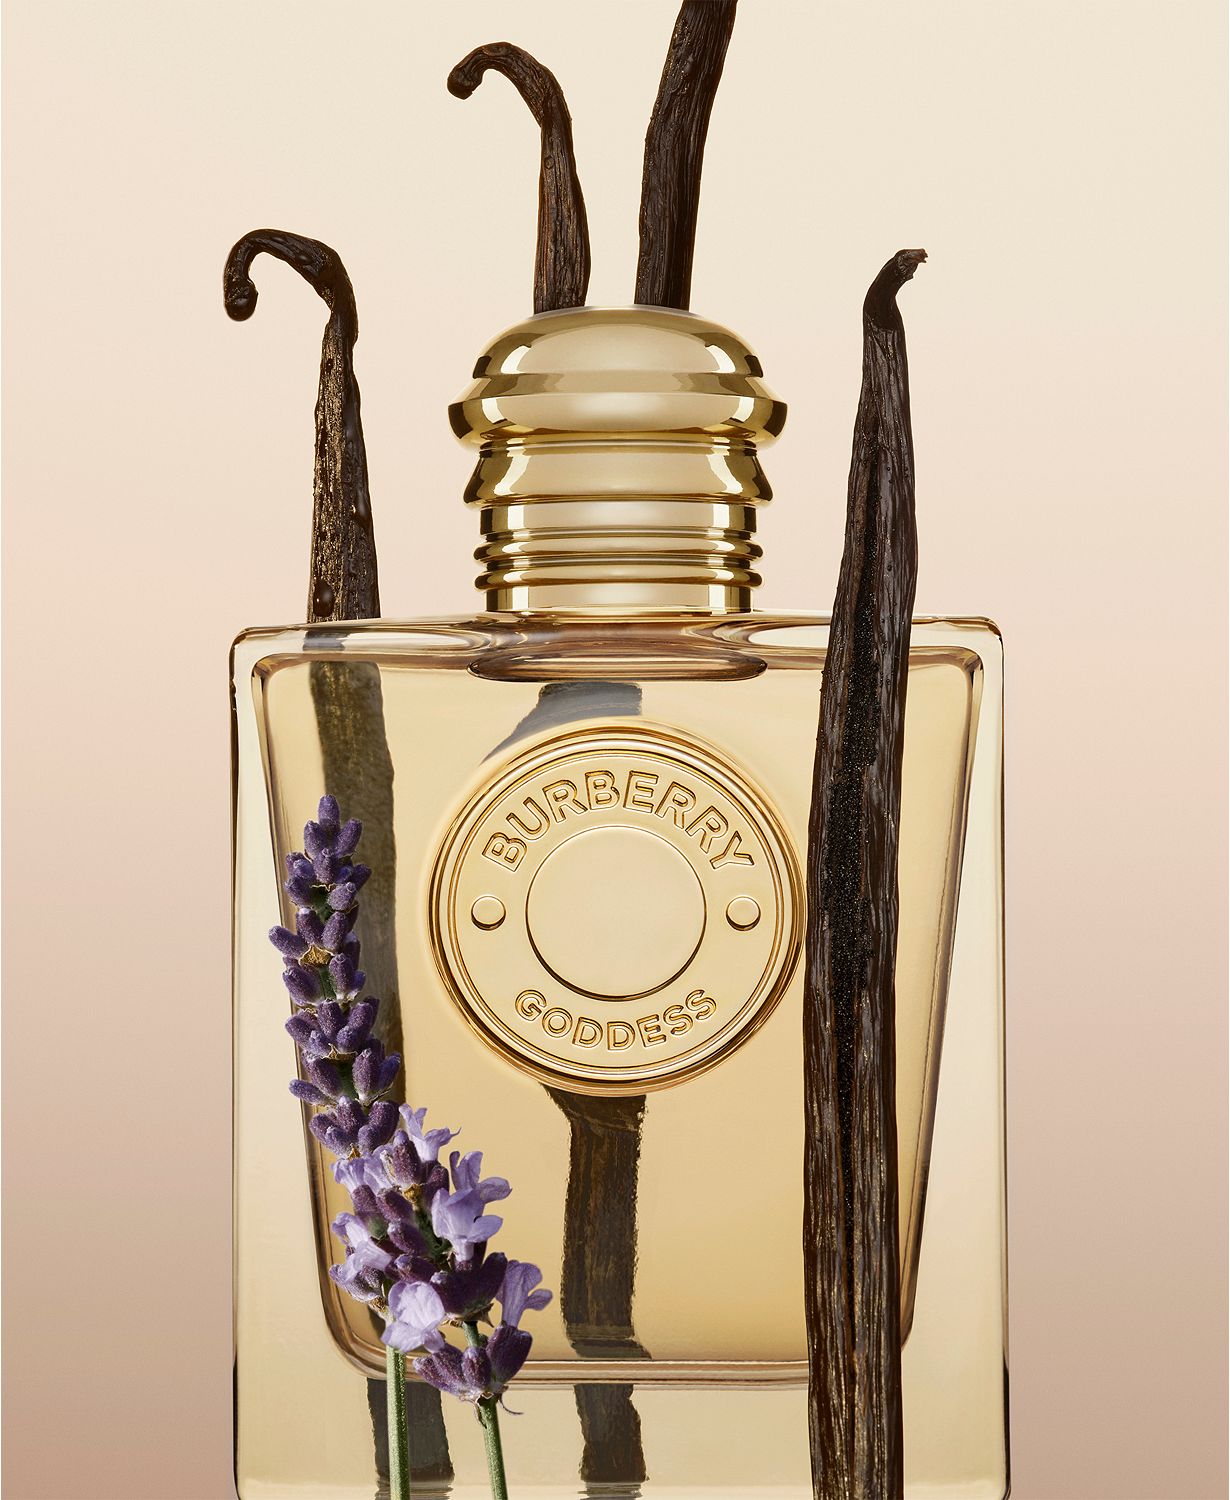 Burberry Goddess Eau de Parfum, 3.3 oz.